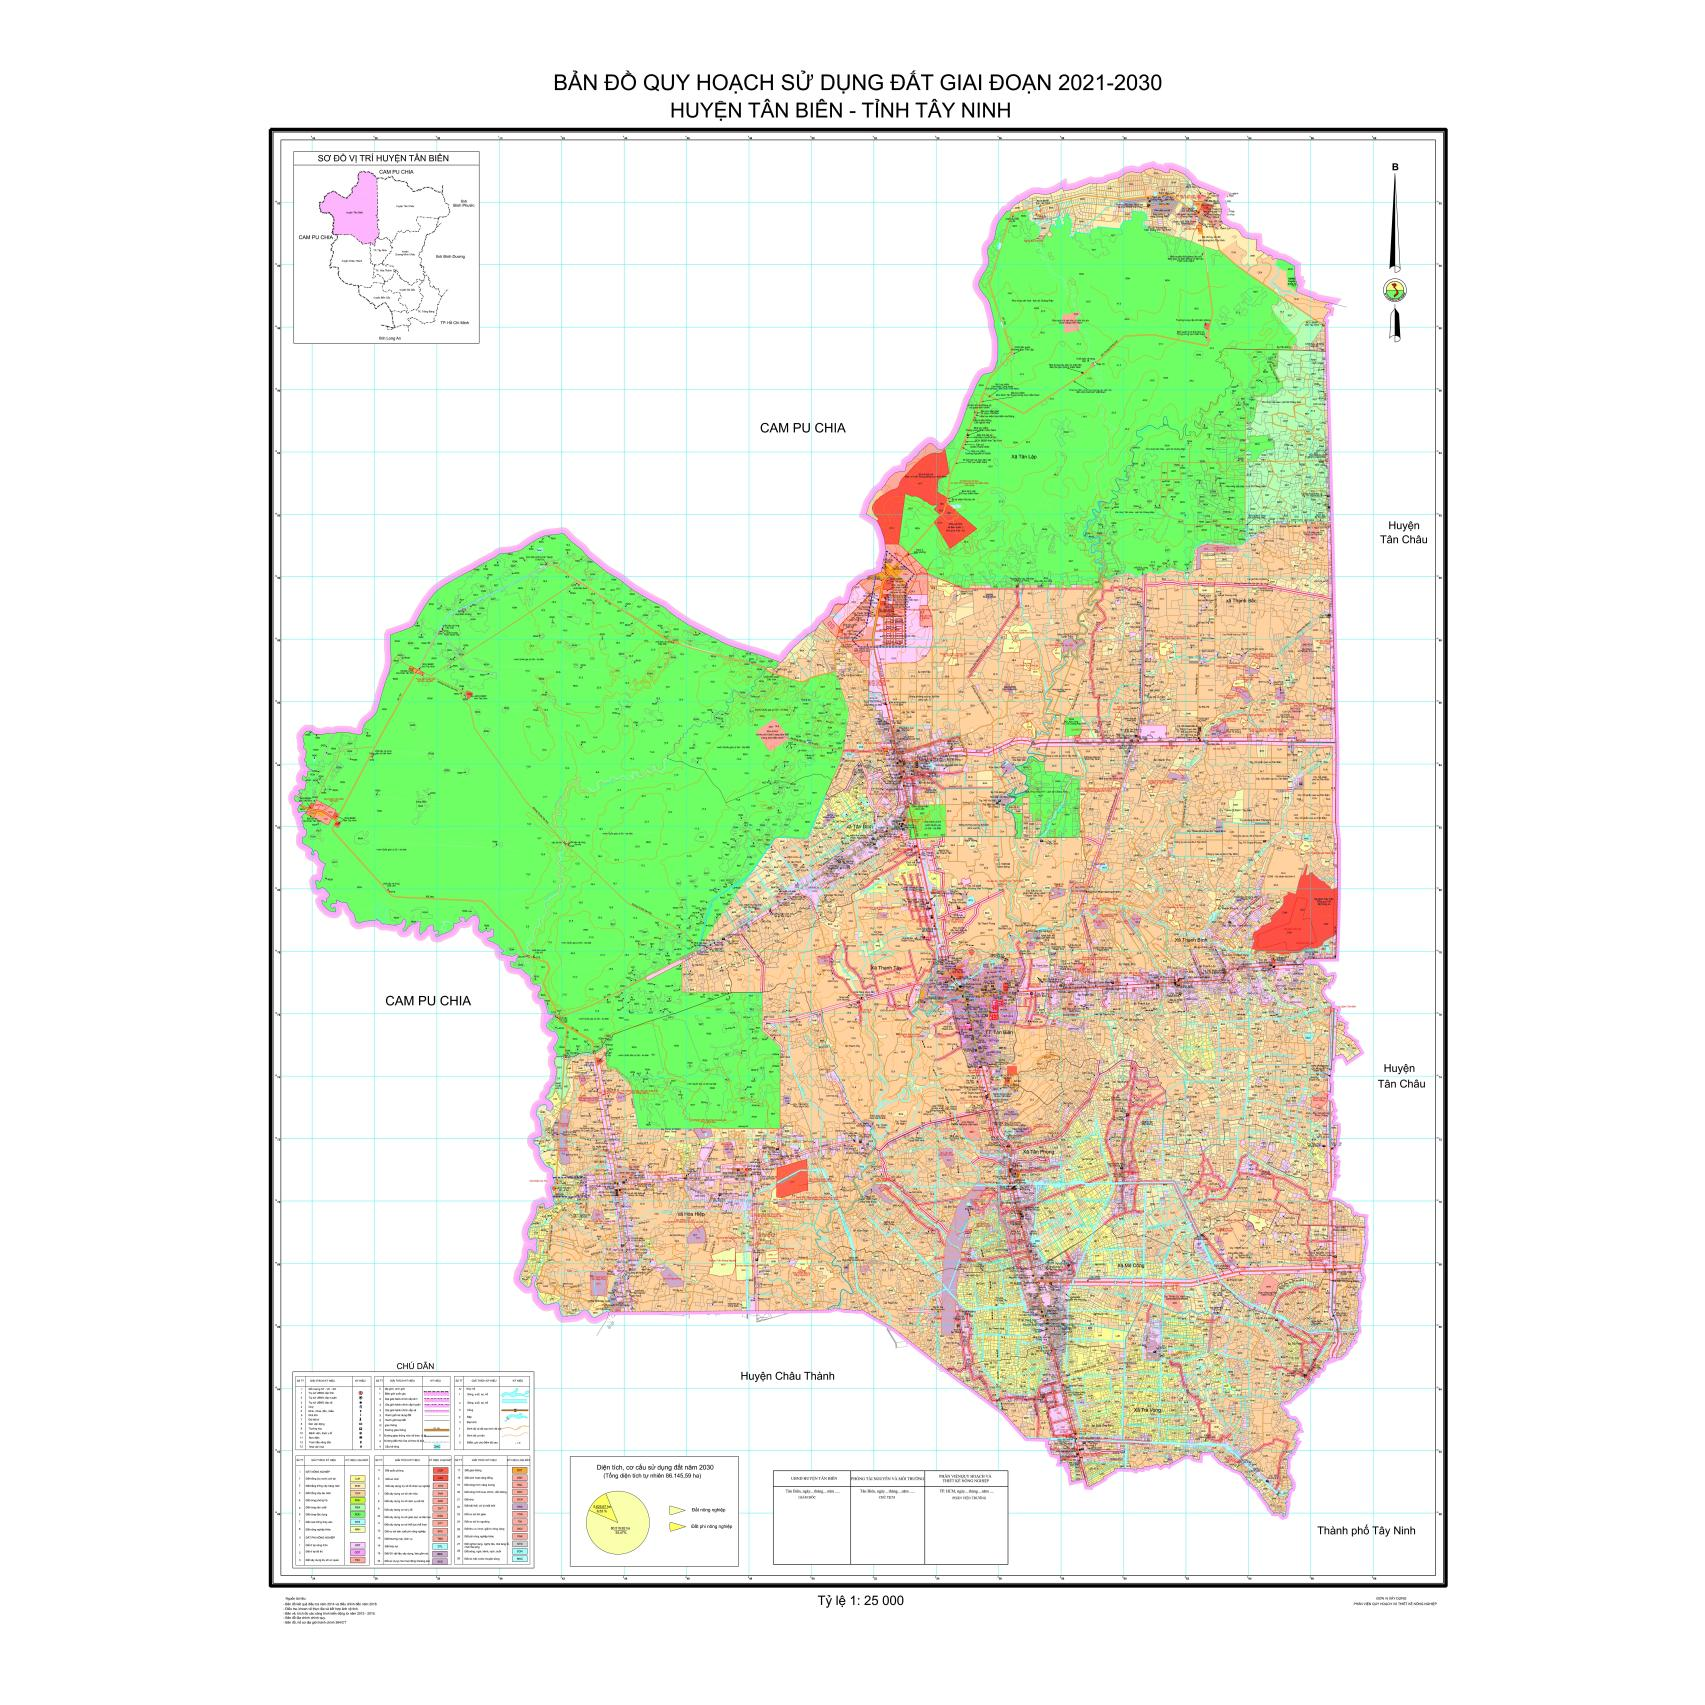 Bản đồ quy hoạch sử dụng đất Huyện Tân Biên, Tây Ninh